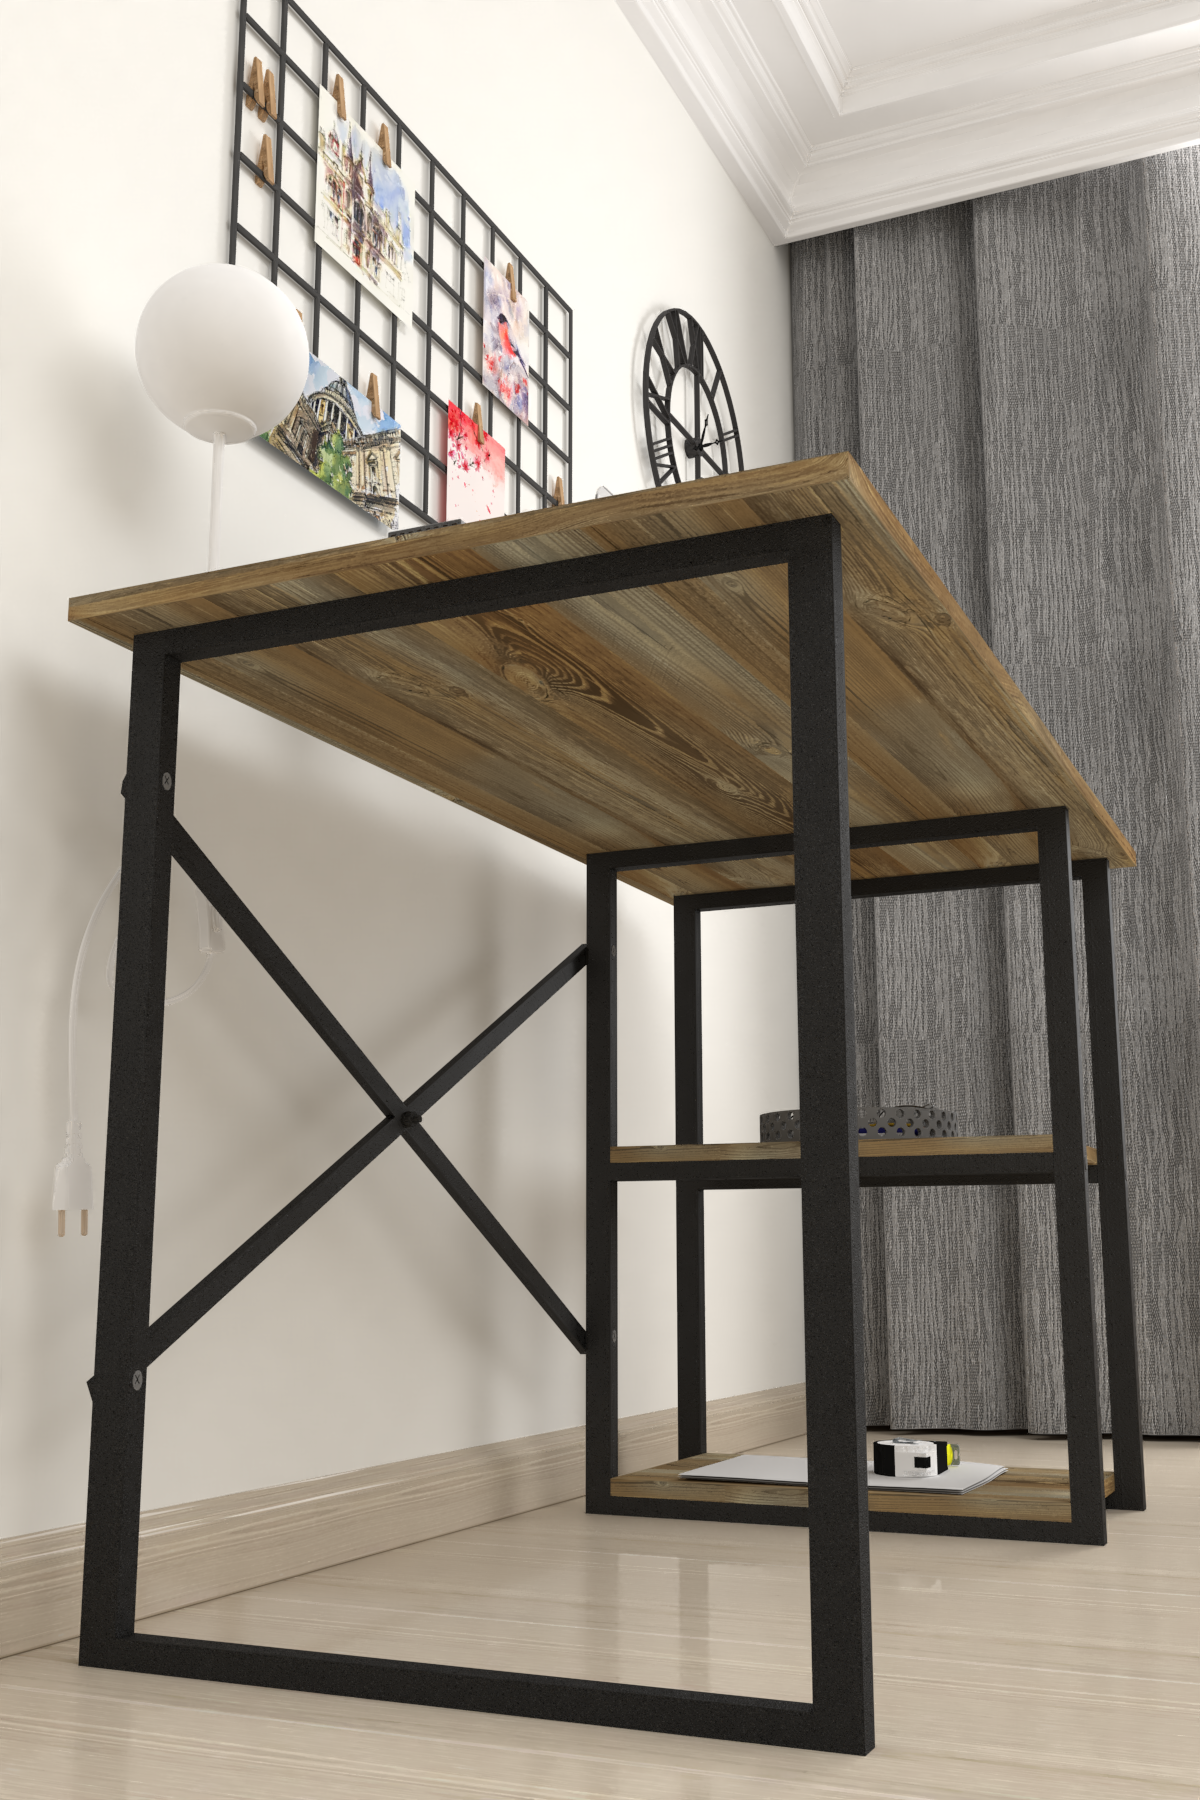 Bofigo 2 Shelf Study Desk 60x120 cm  Patik